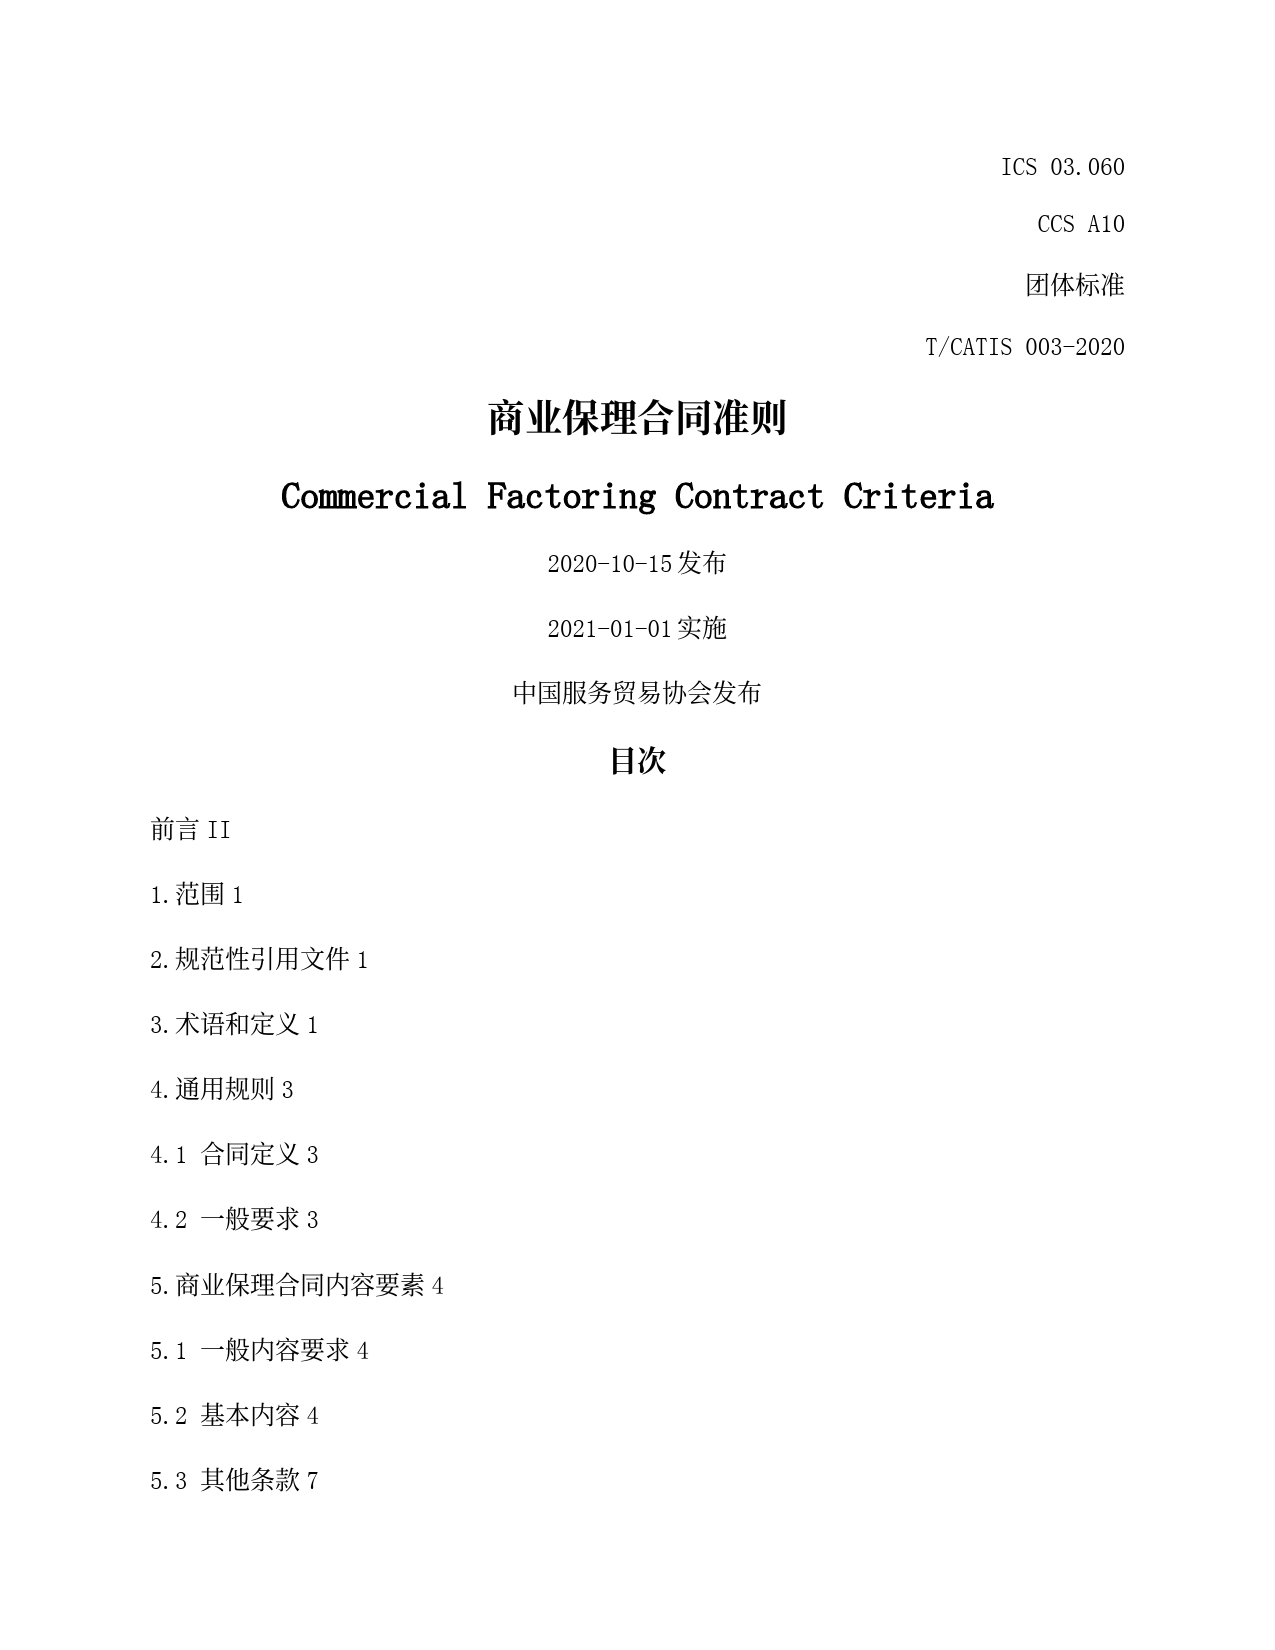 商业保理合同准则(中国服务贸易协会2020版)模板